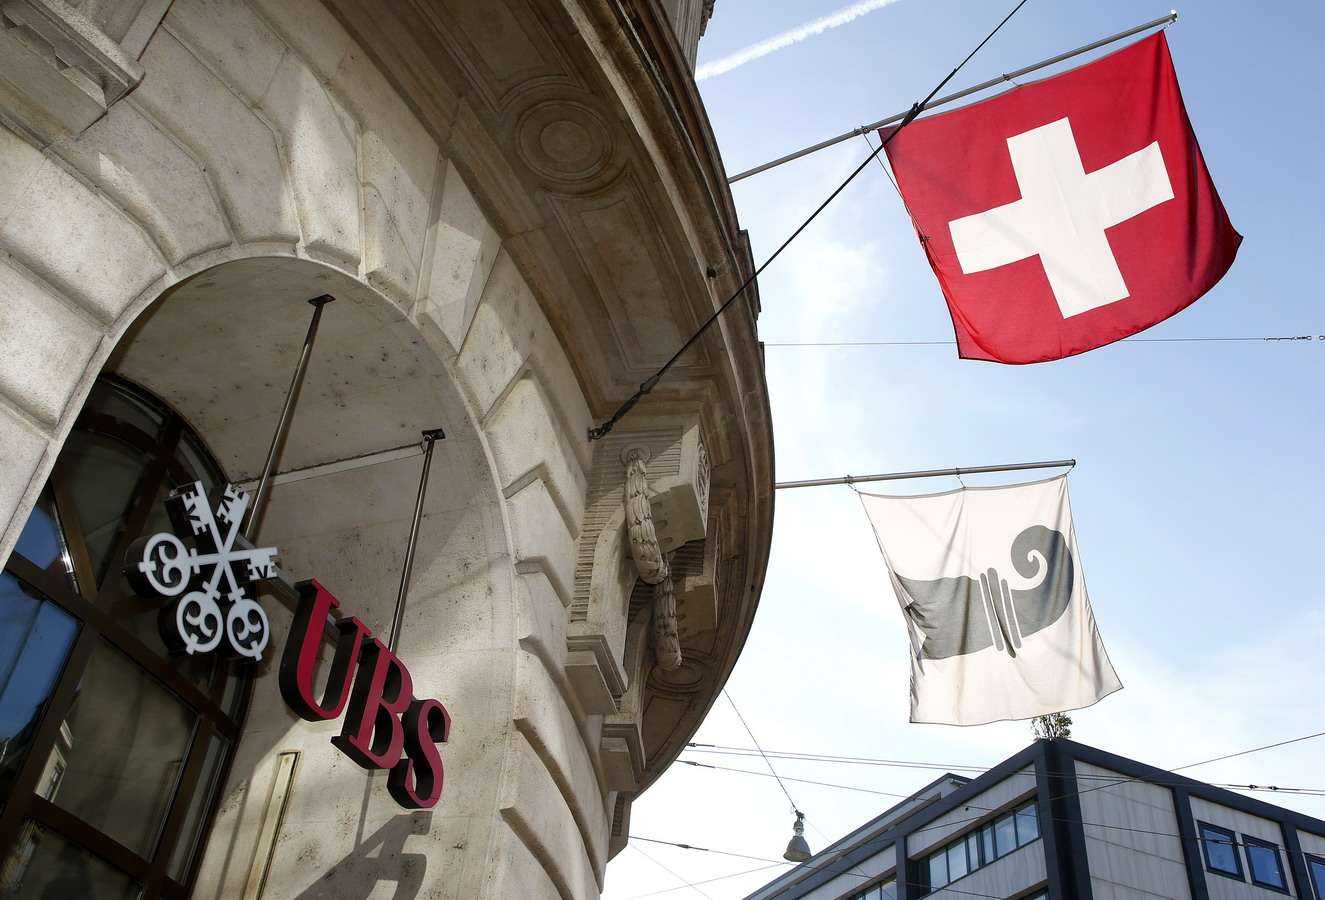 Khám phá đất nước Thụy Sĩ nổi tiếng